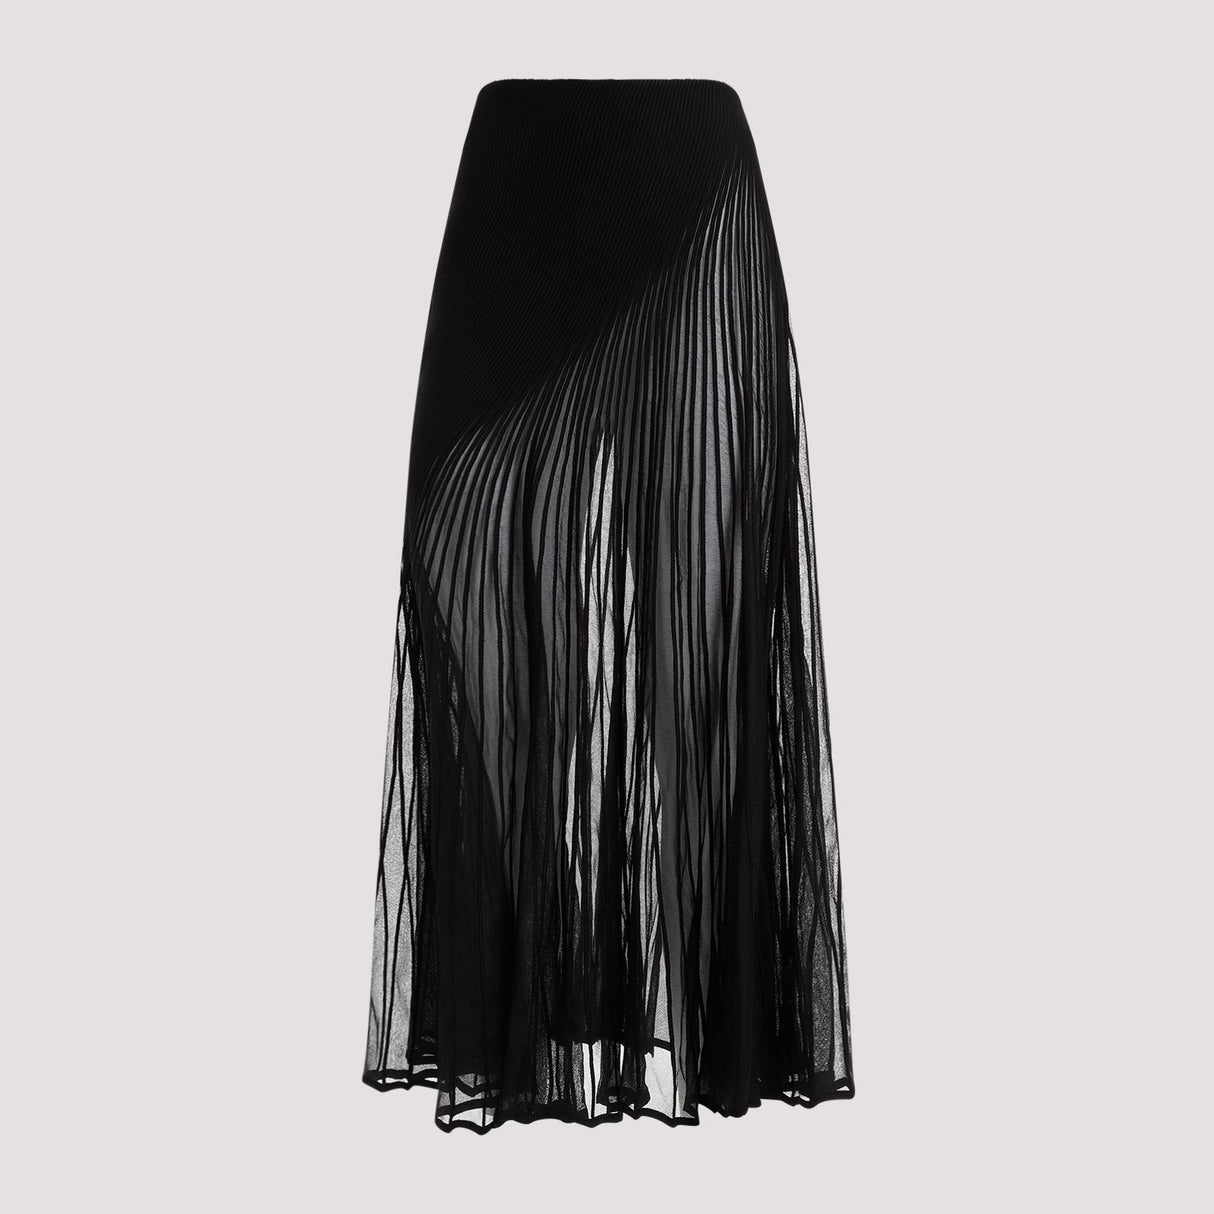 Váy xoắn cao cấp dành cho phụ nữ - Màu đen sang trọng với sợi lụa hỗn hợp